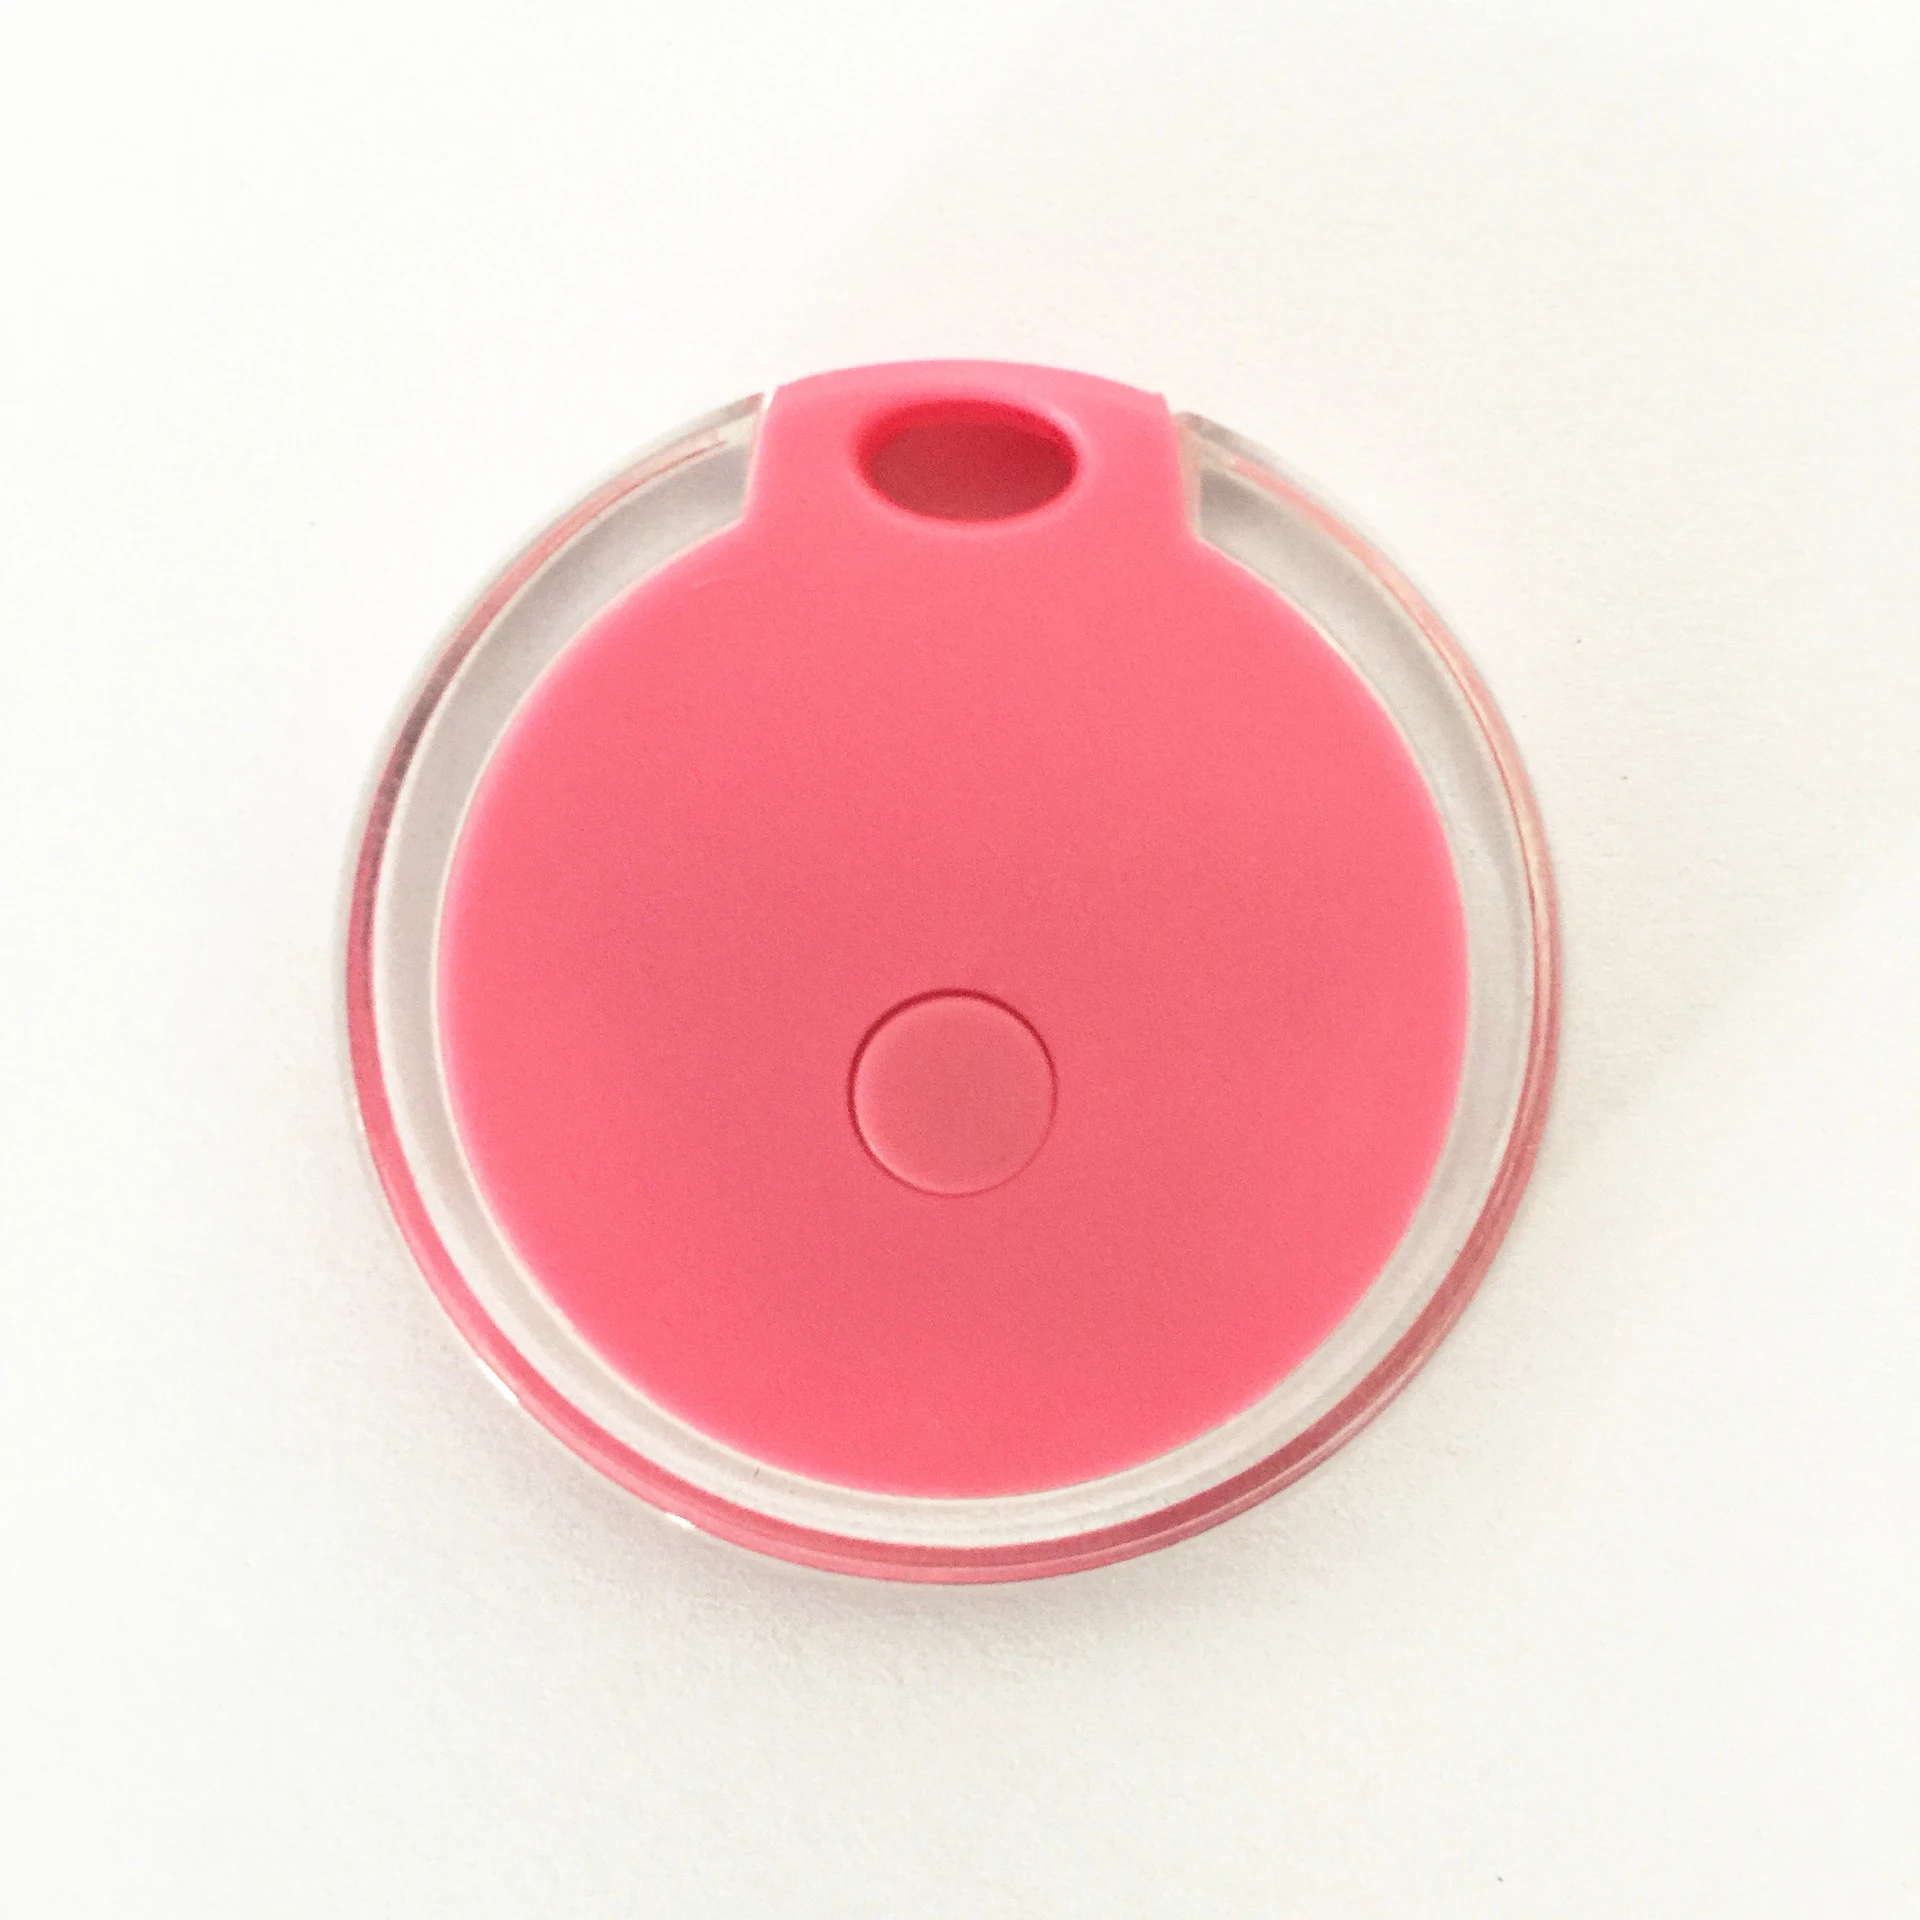 Gps локатор анти-потерянный сигнал тревоги Pet телефон потерял напомнить автомобиль Беспроводной Smart itag Bluetooth устройство для слежения за ребенком сумка Кошелек Key Finder - Цвет: Pink